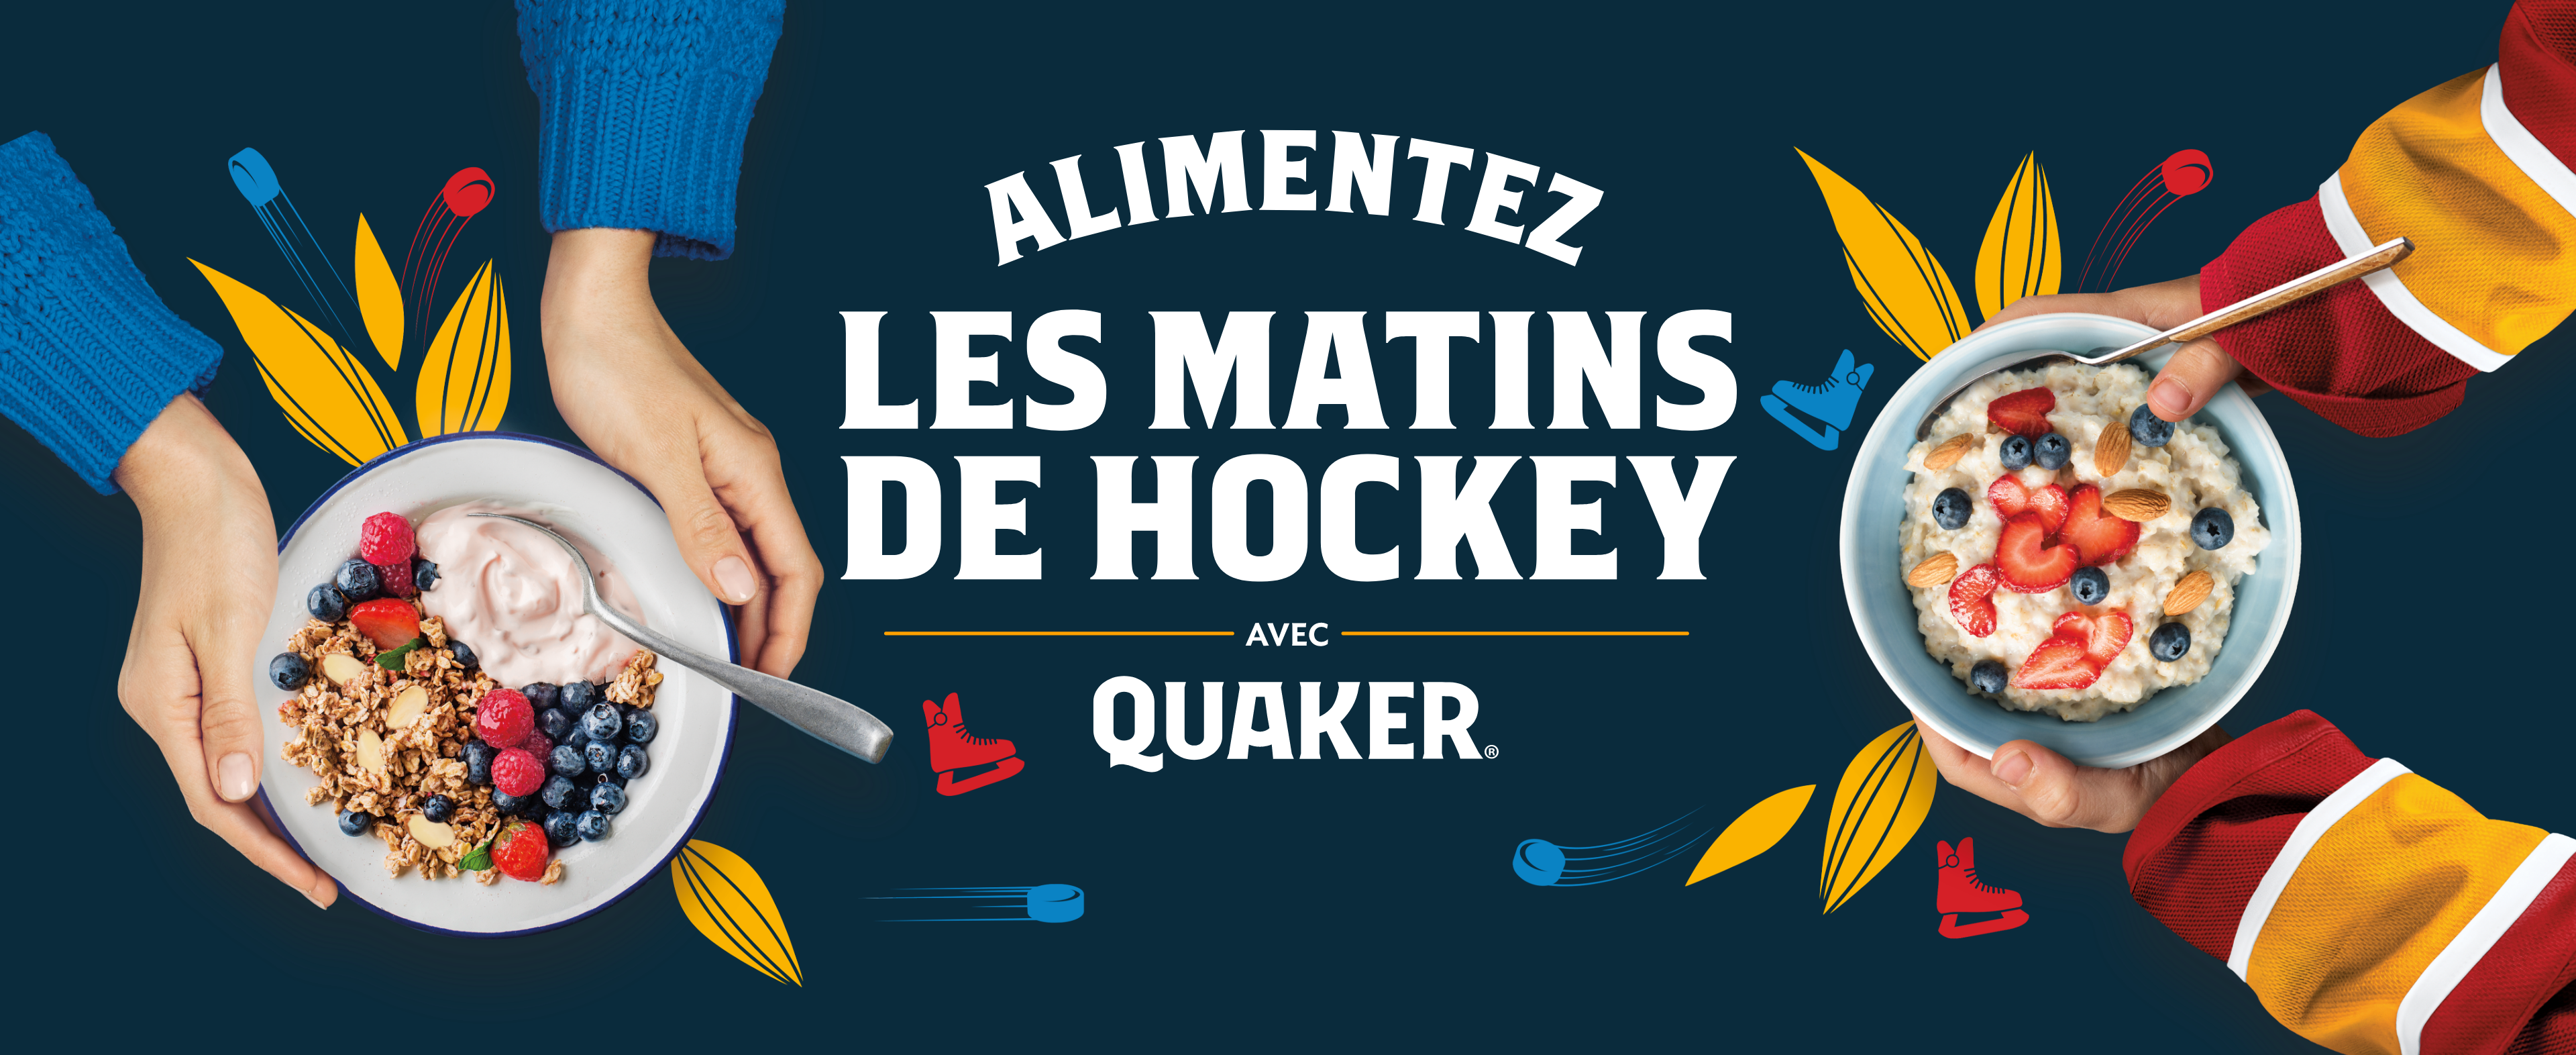 quaker hockey